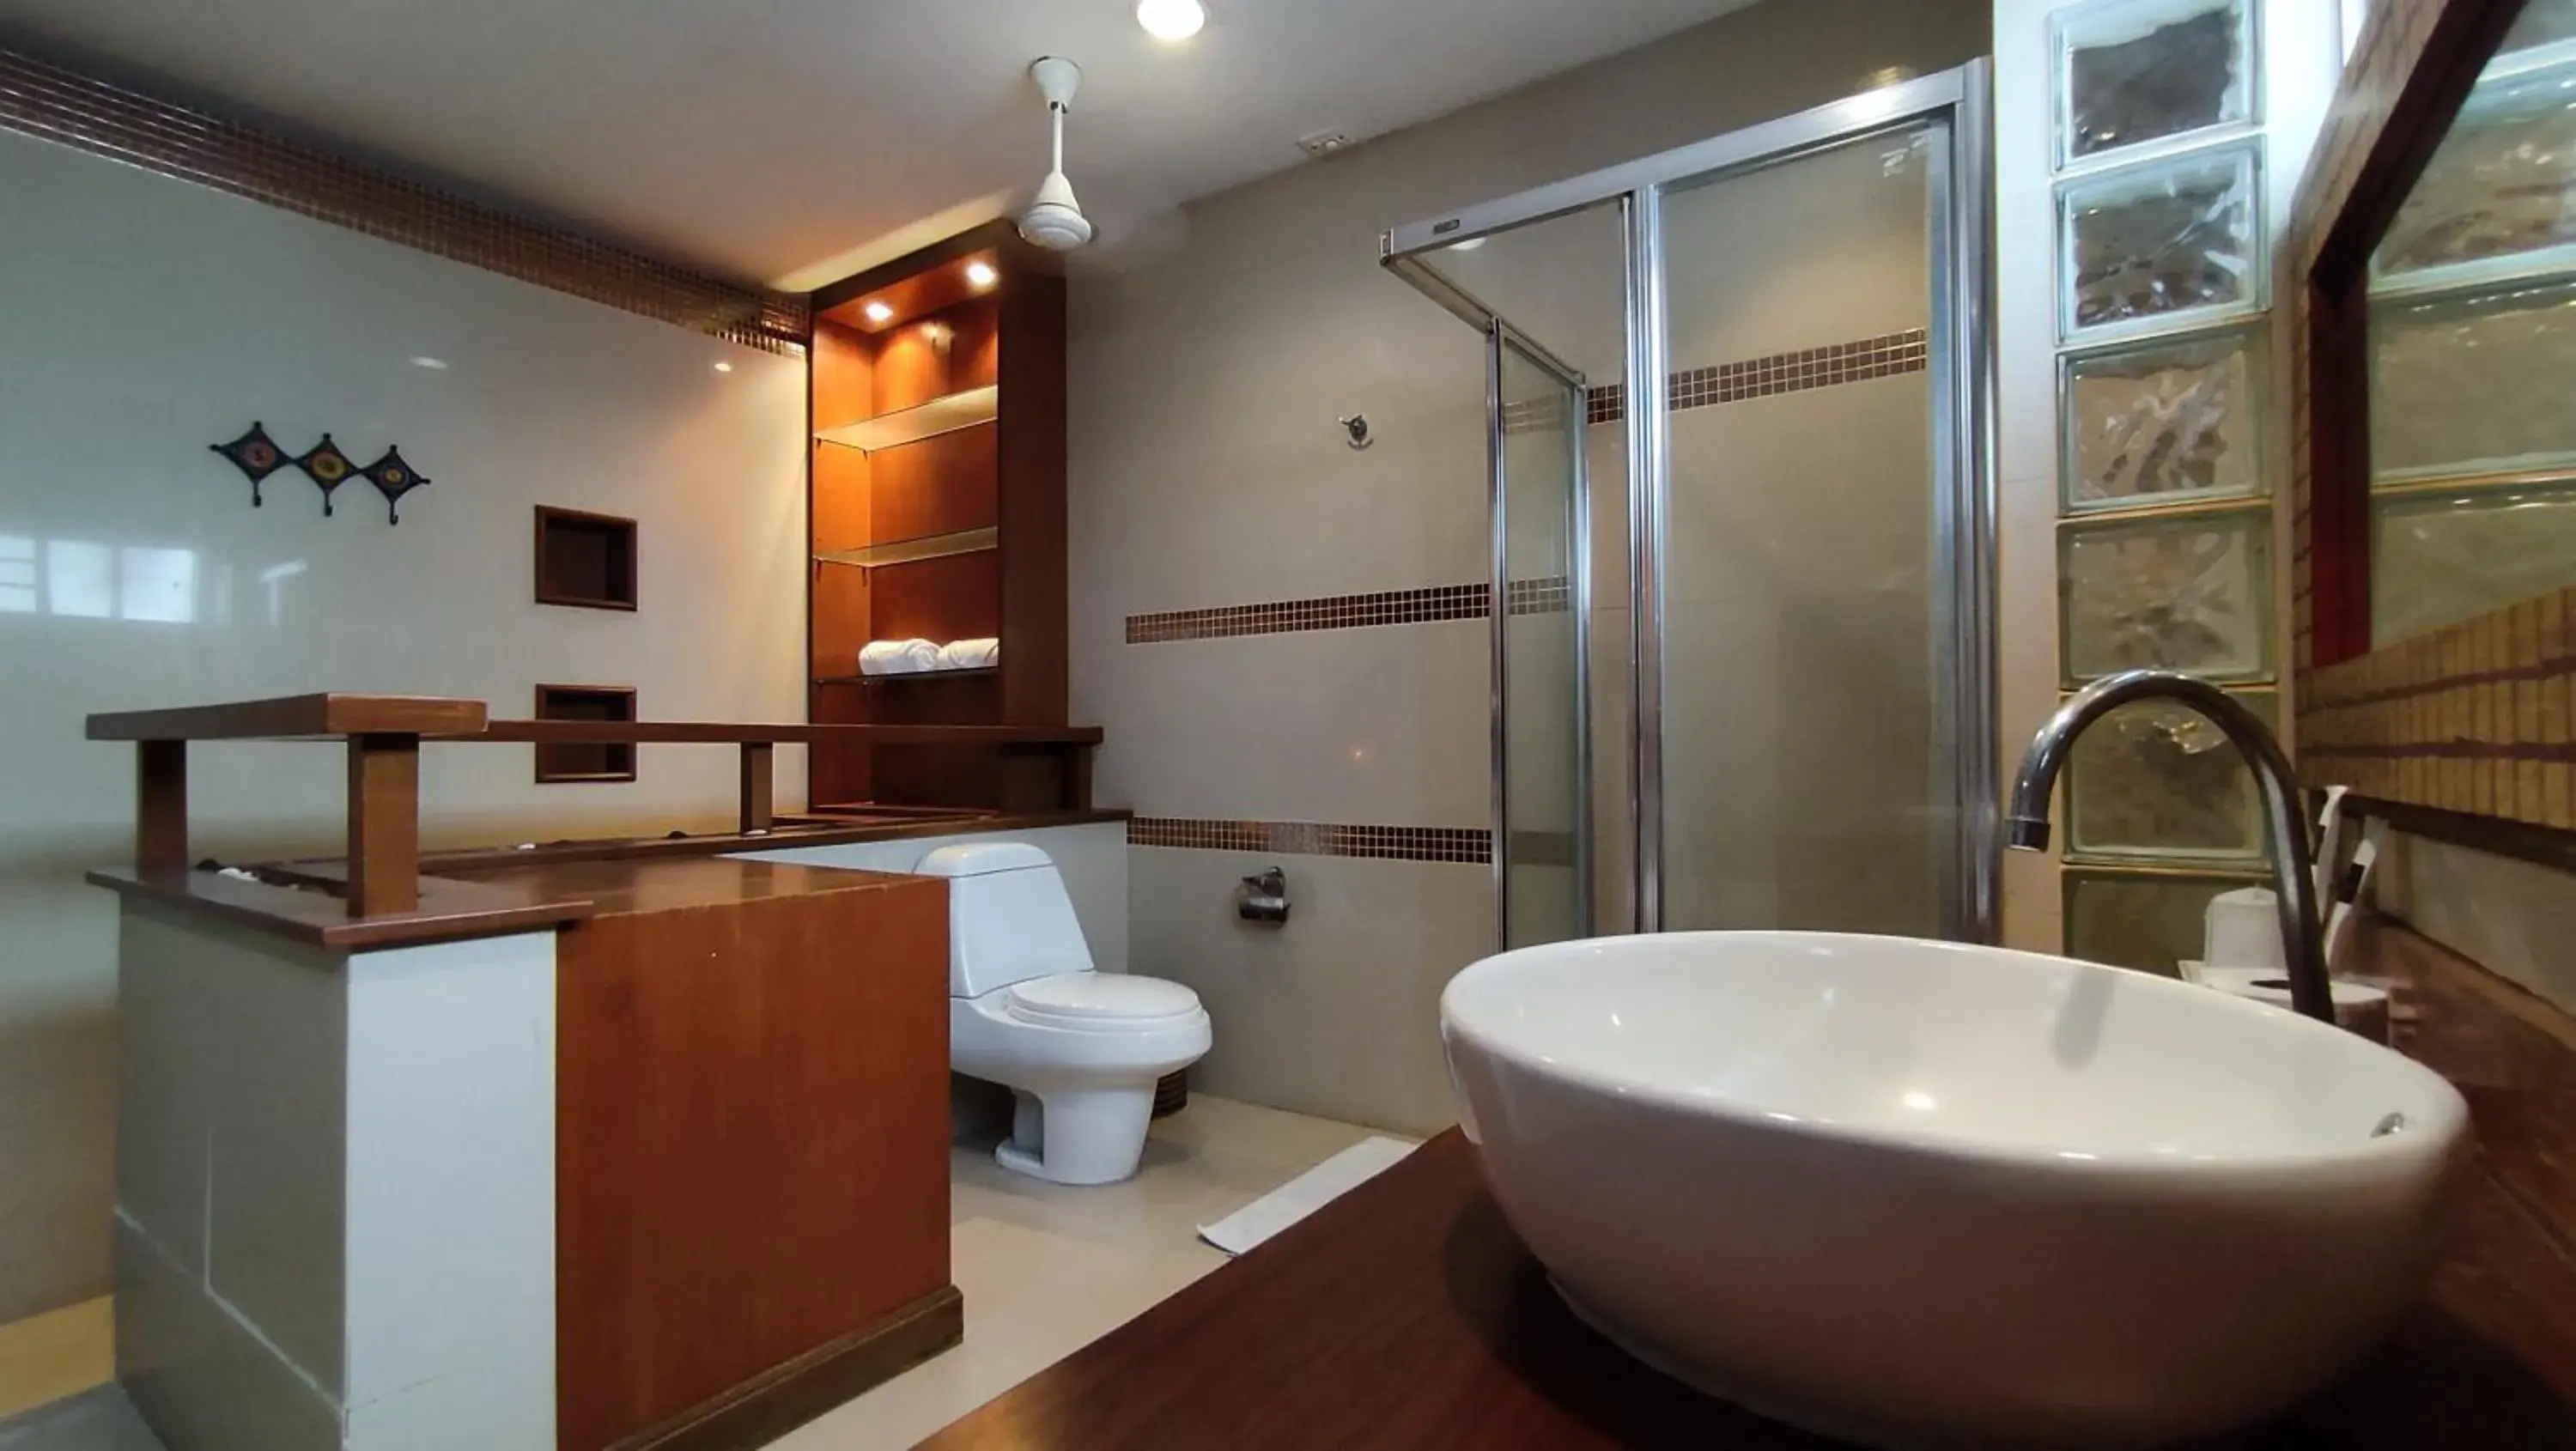 Toilet, Bathroom in ShriGo Resort & Spa Pattaya